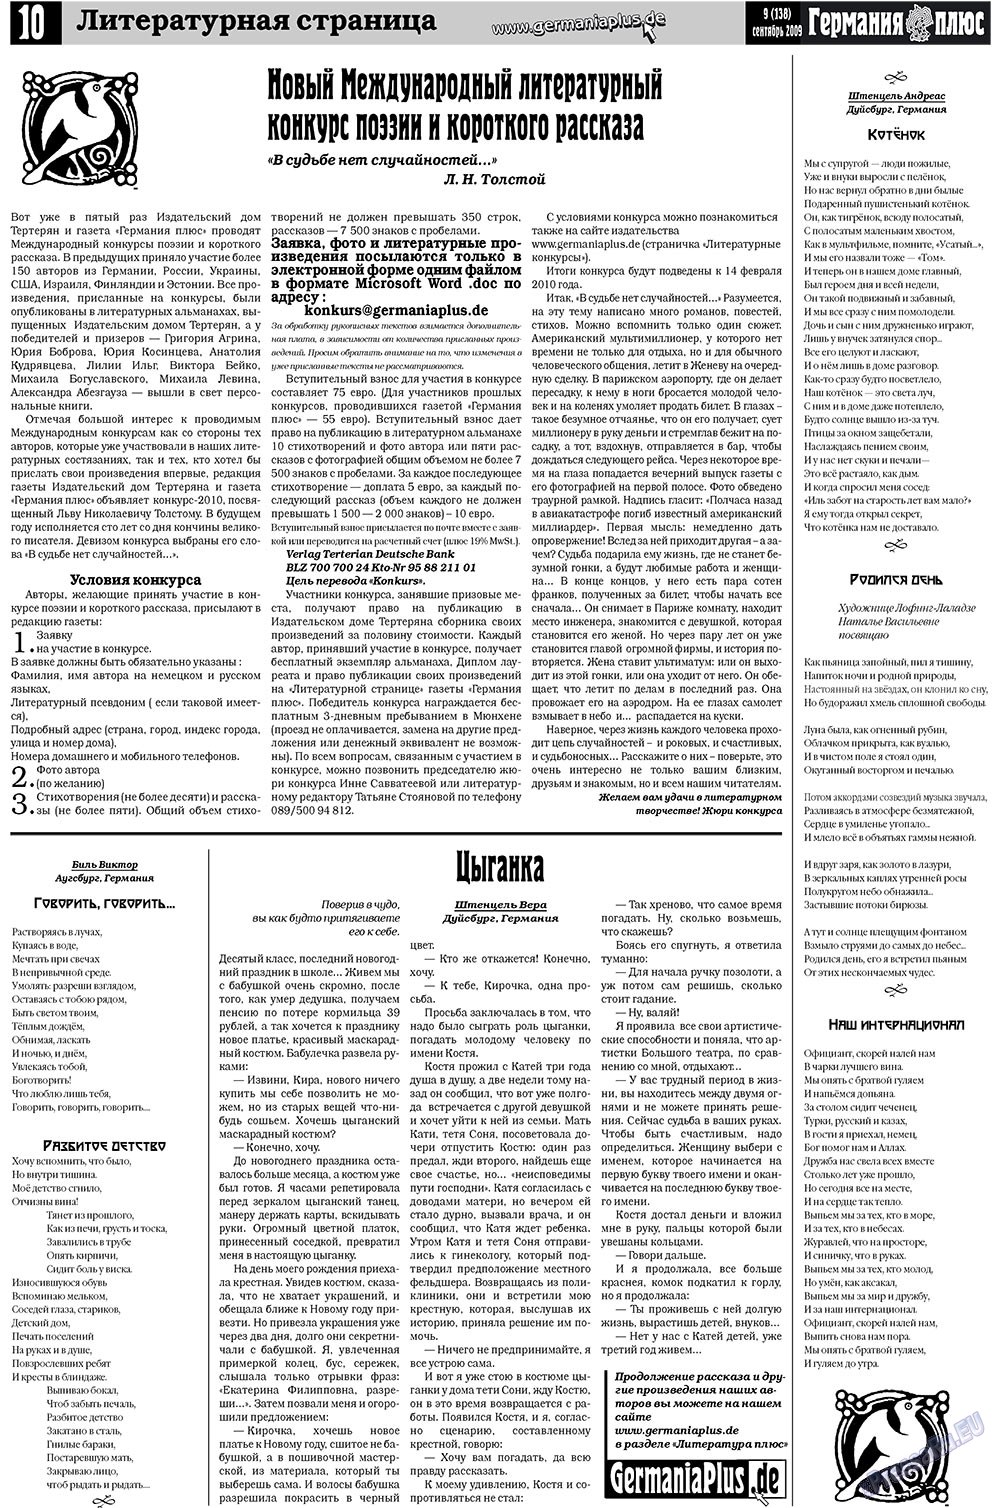 Германия плюс (газета). 2009 год, номер 9, стр. 14